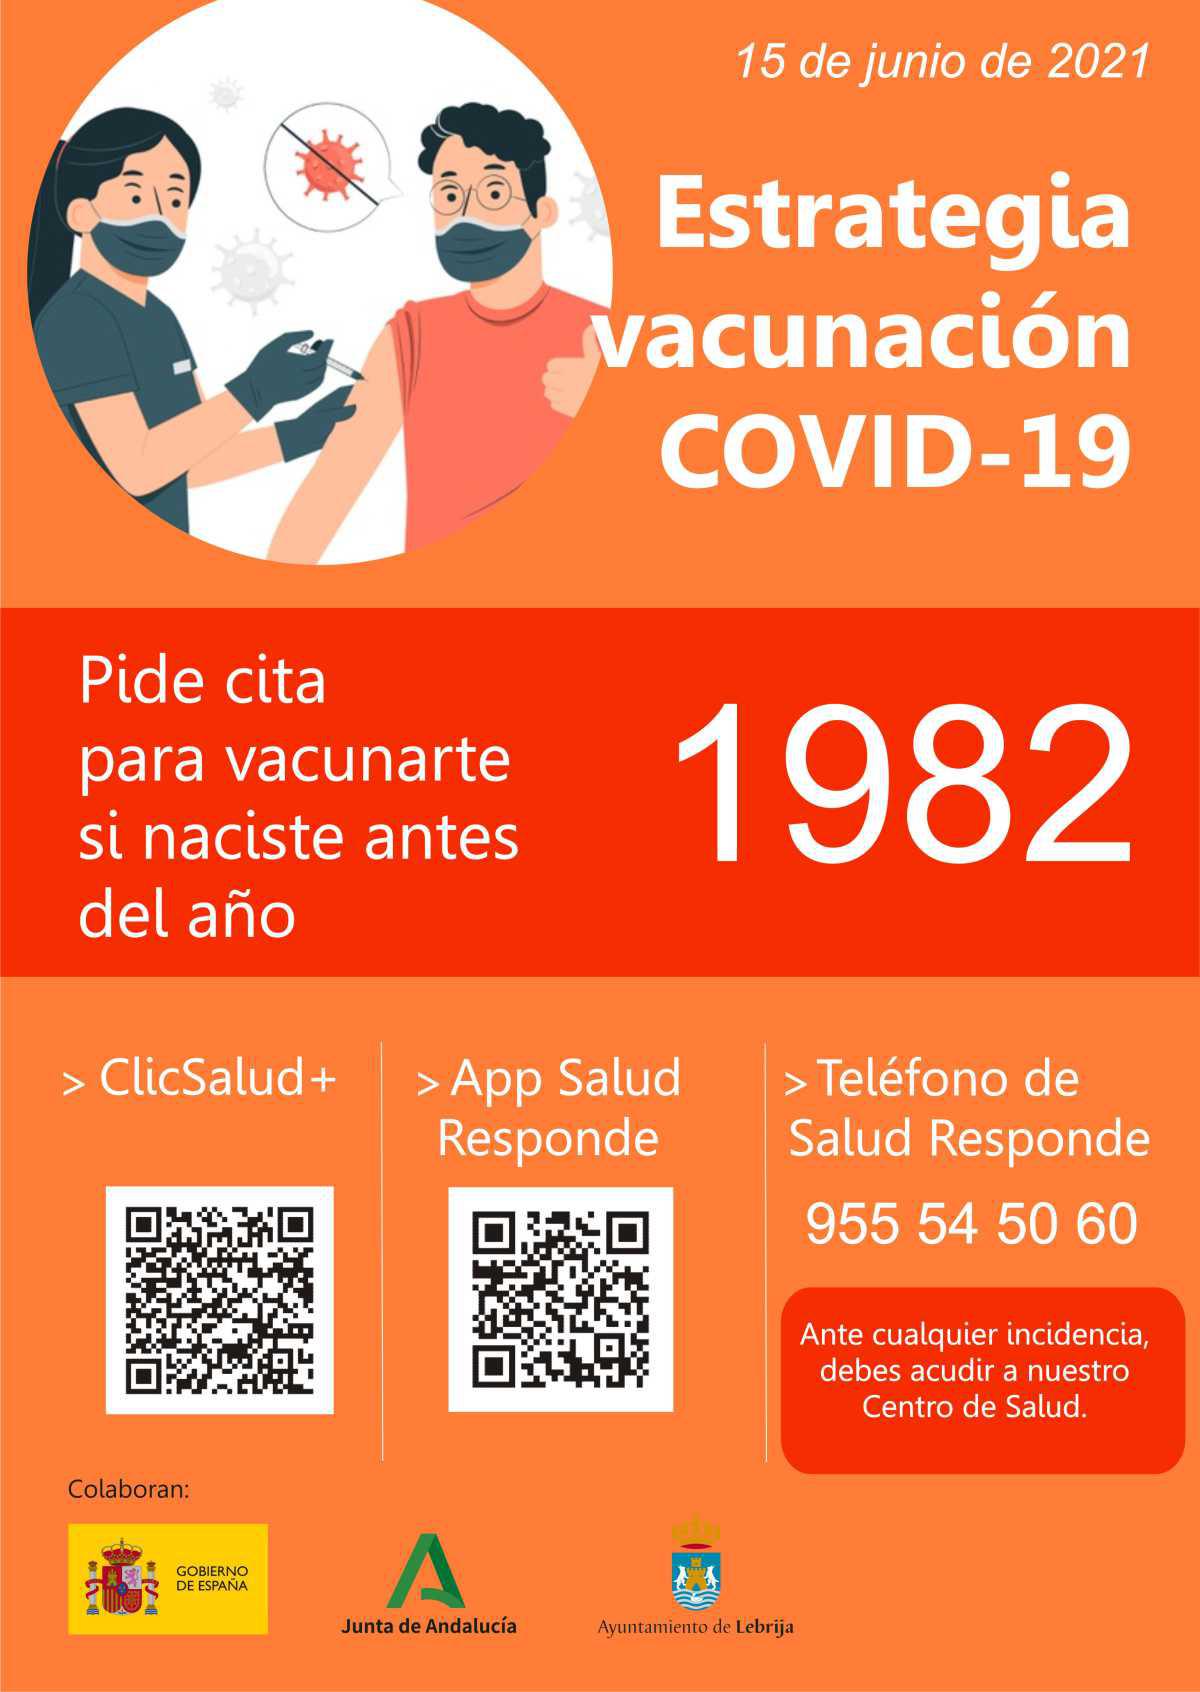 Disponible la solicitud de cita para vacunación contra la Covid-19 para personas nacidas en 1981 y 1982